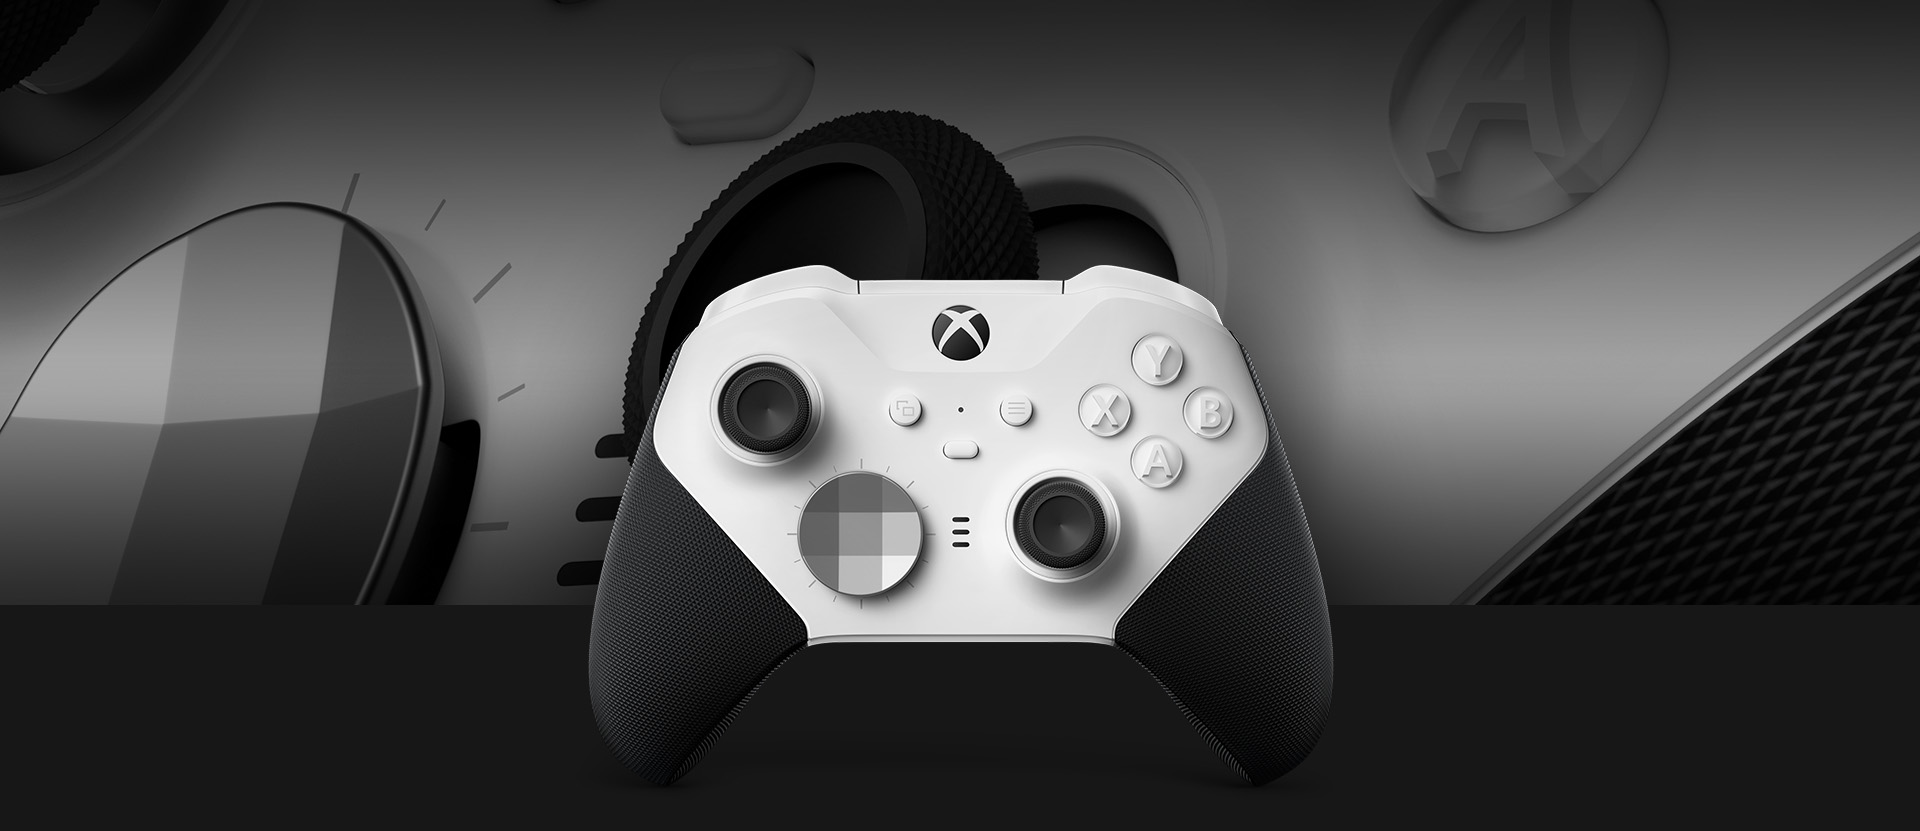 Originálny a značne vylepšený gamepad Xbox Wireless Controller Elite Series 2 Core Edition bol navrhnutý v spolupráci s poprednými profesionálnymi hráčmi svetovej úrovne.